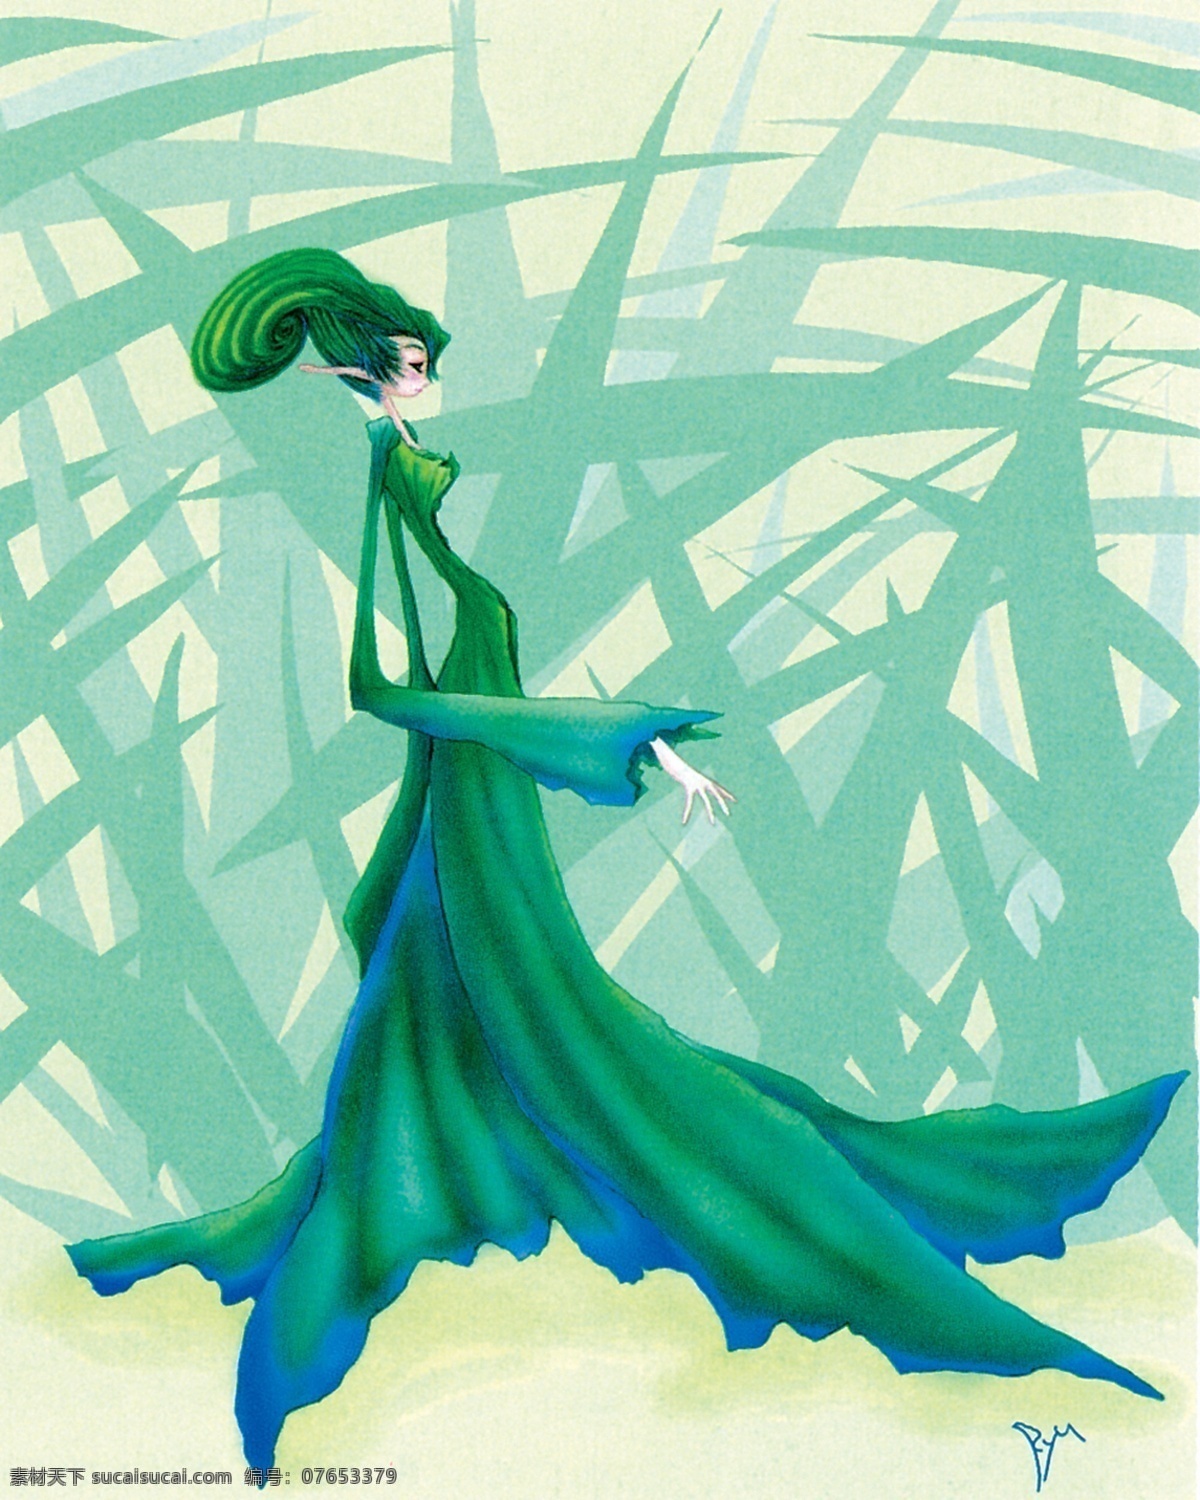 插画 插图 动漫 绘画书法 精灵 绿色 欧洲 绿色仙女 仙女 天使 叶子 神话 童话 文化艺术 插画集